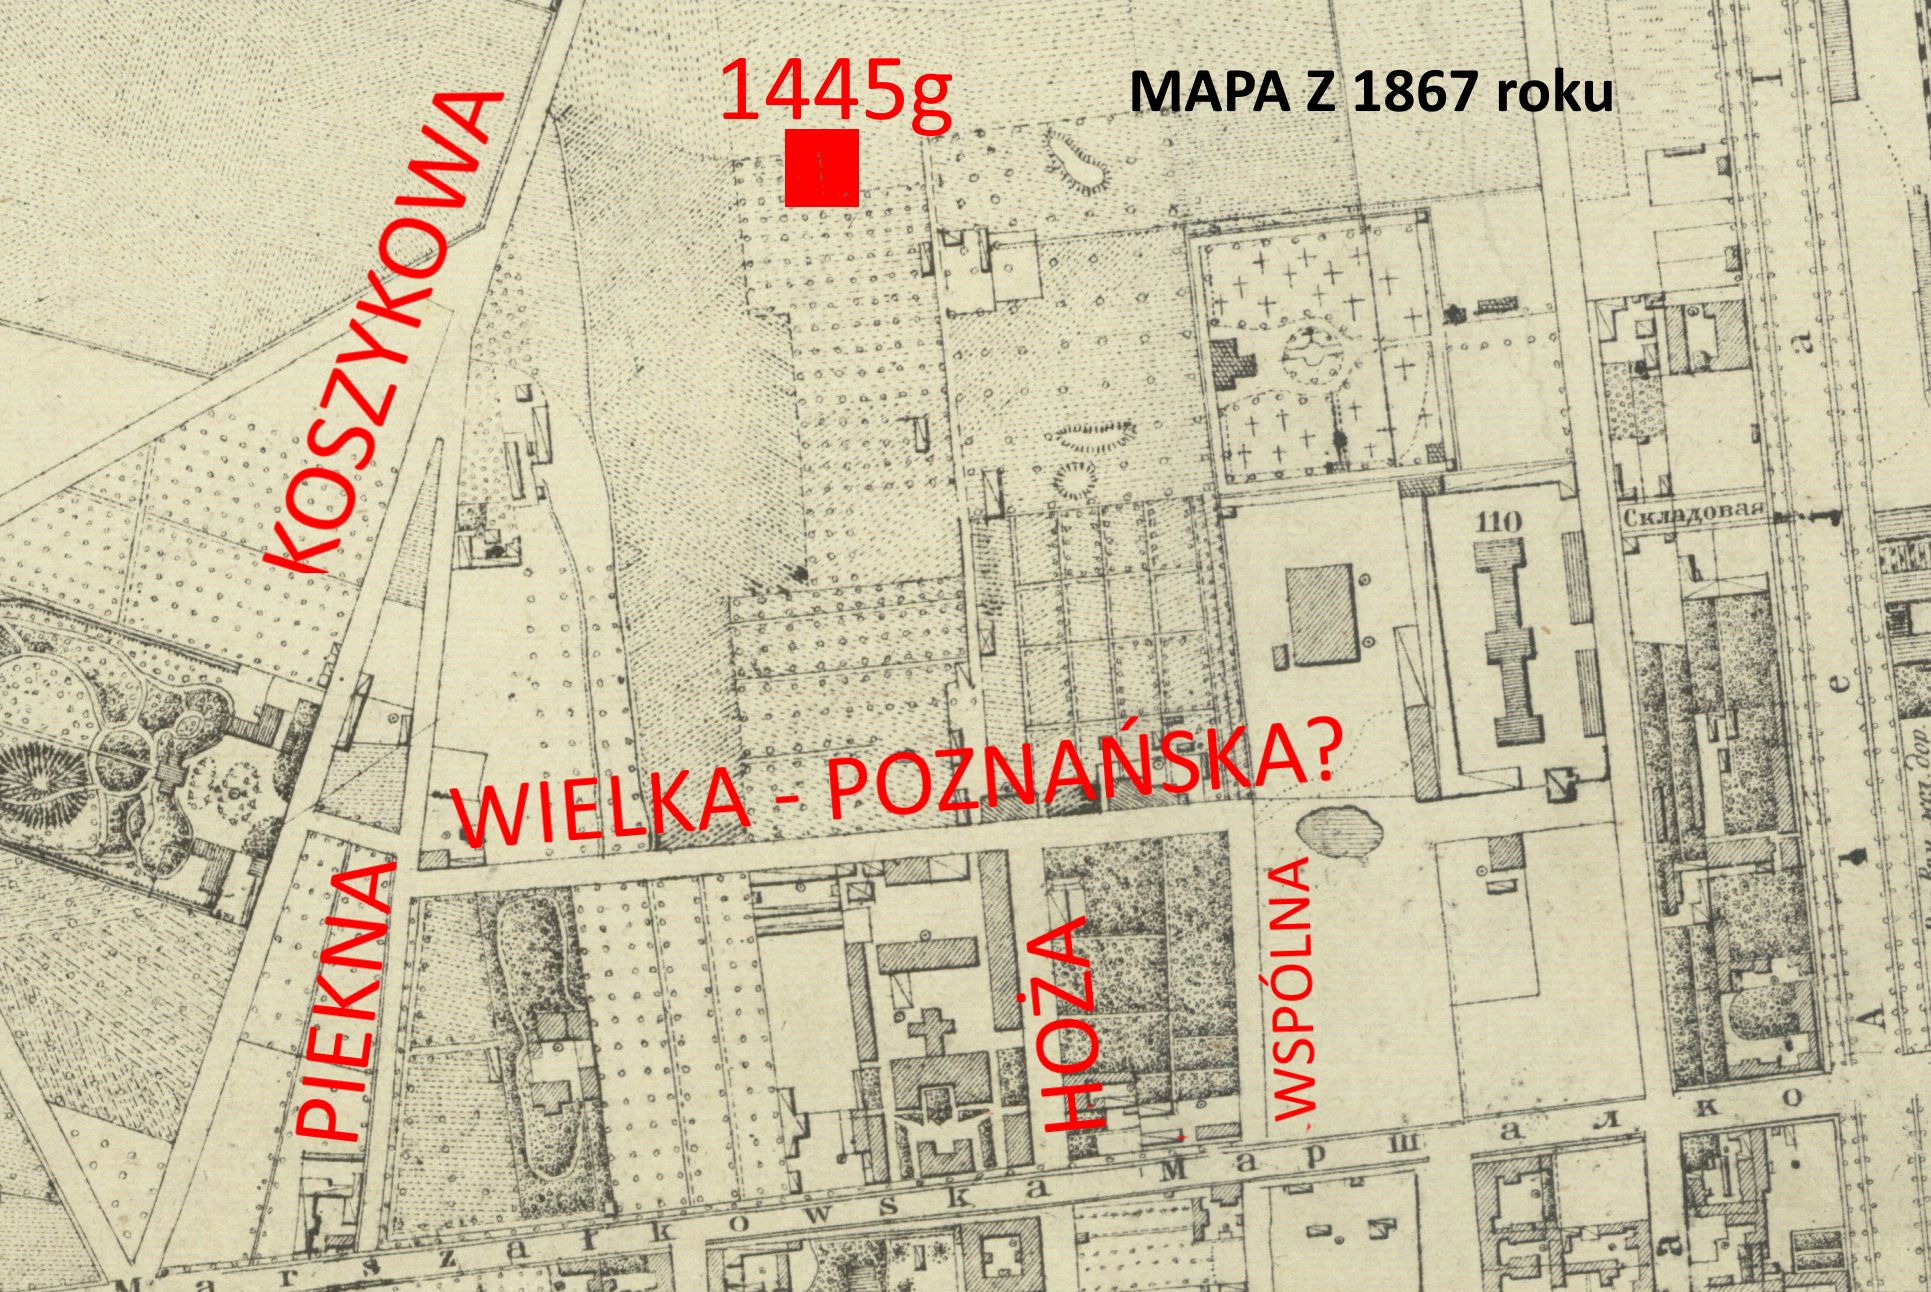 0 mapa okolic e1445g przed podzialem 1867